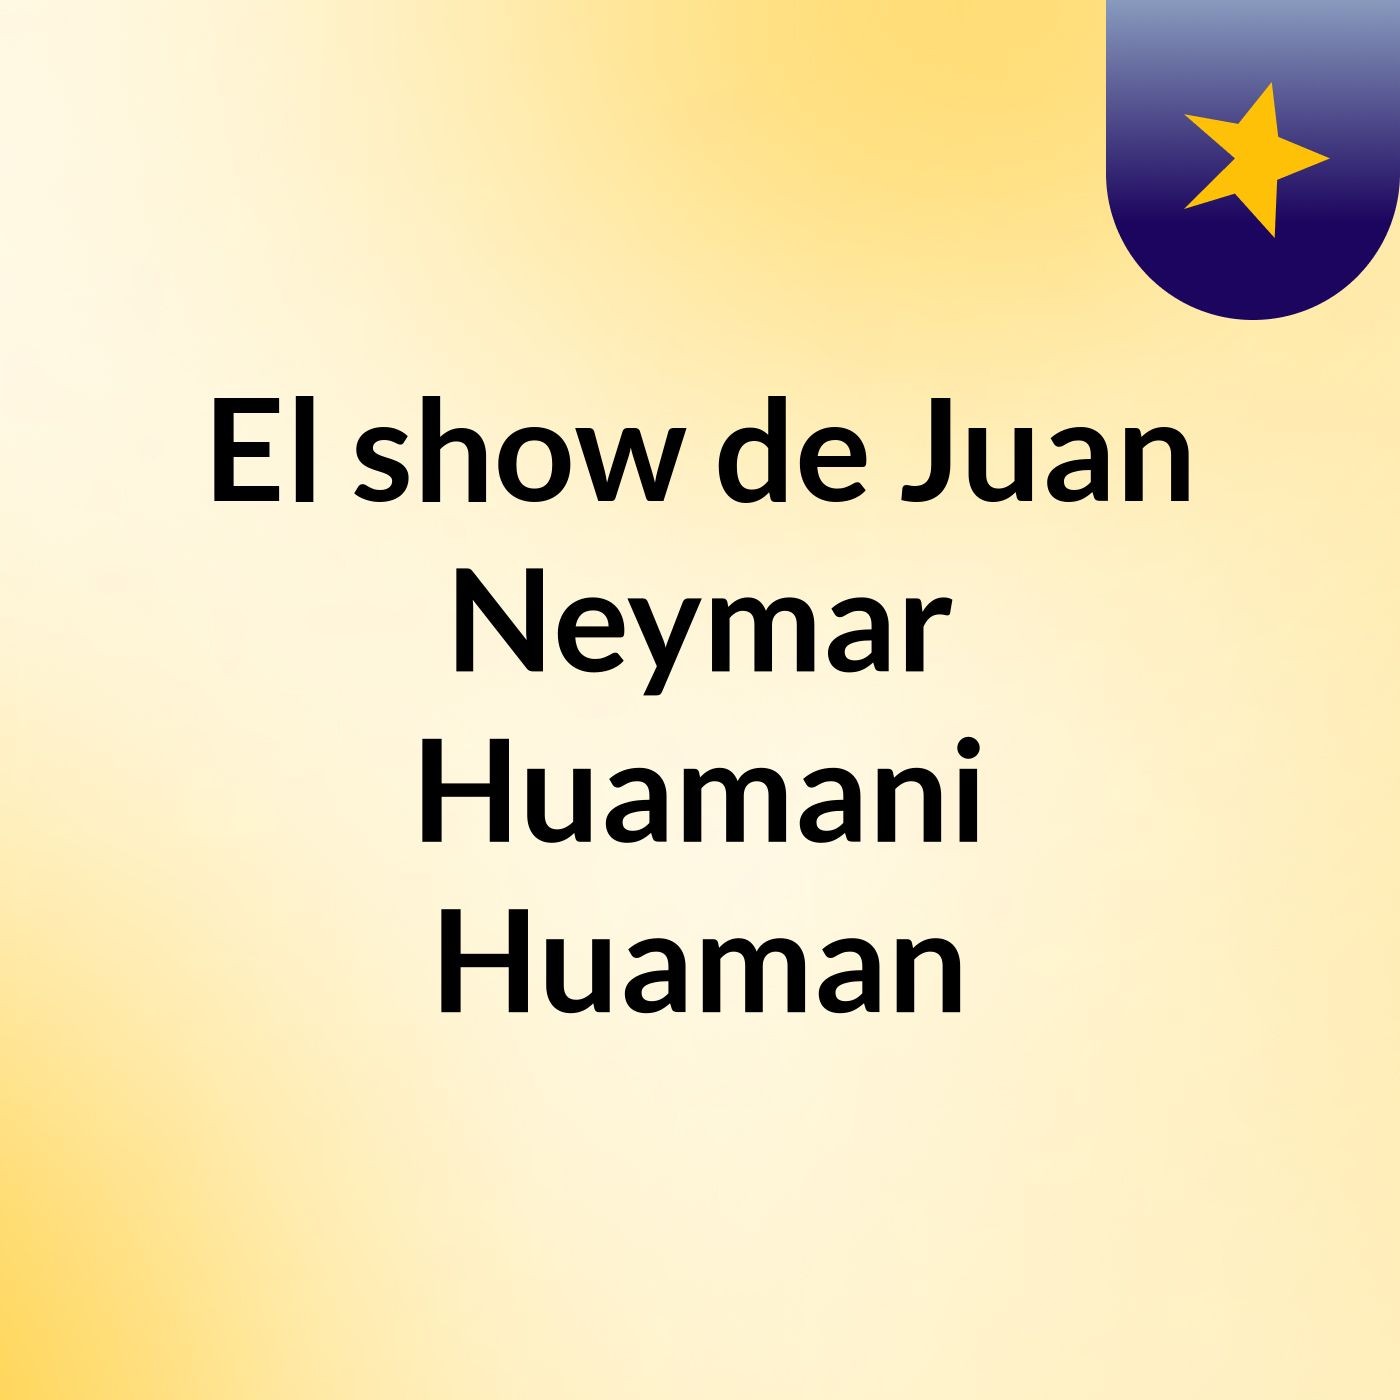 Episodio 4 - El show de Juan Neymar Huamani Huaman